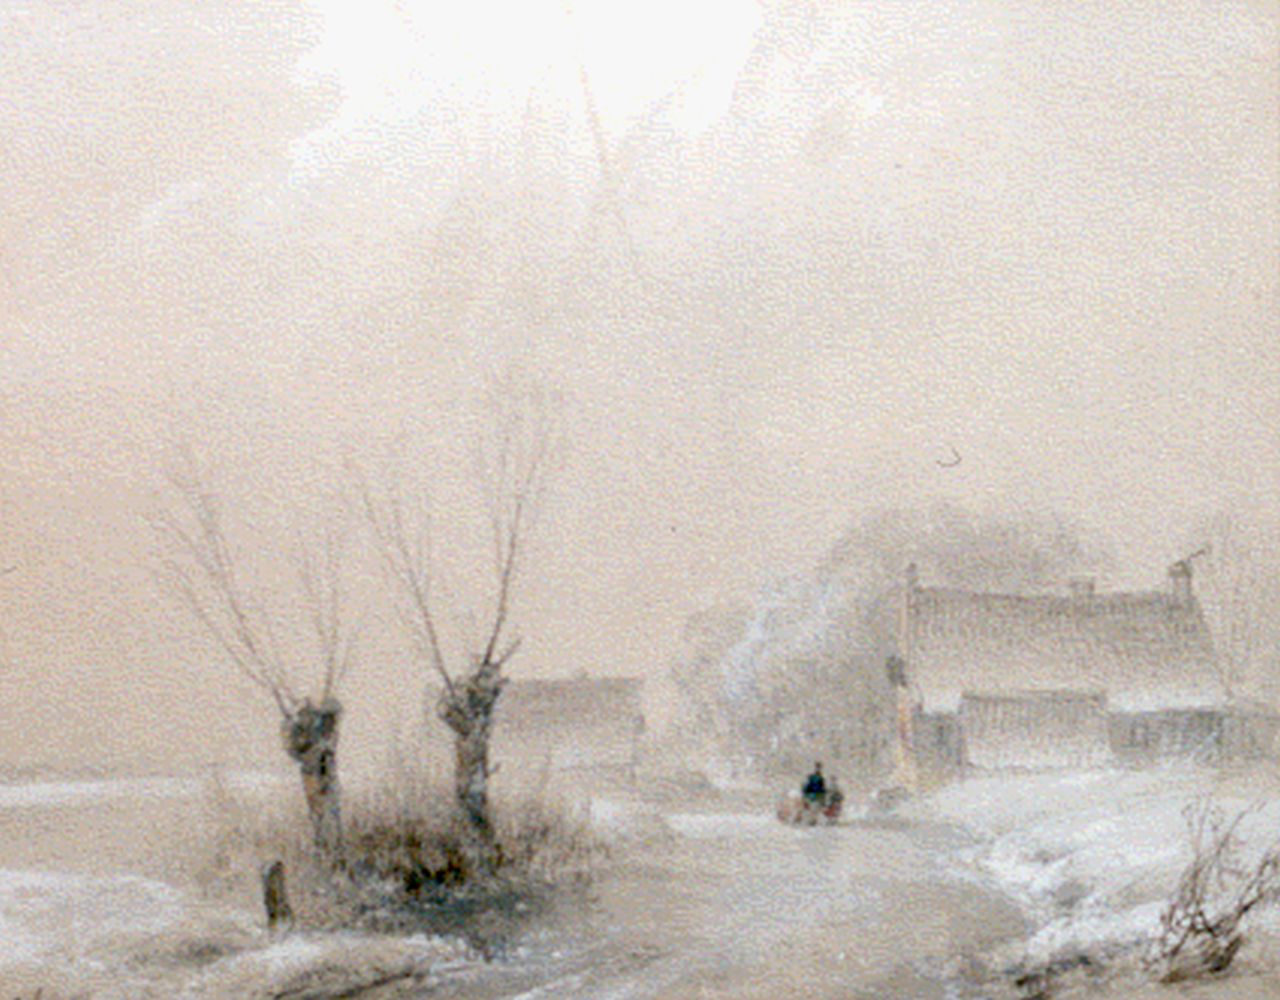 Schelfhout A.  | Andreas Schelfhout, A winter landscape, Aquarell auf Papier 16,6 x 20,9 cm, signed l.l.